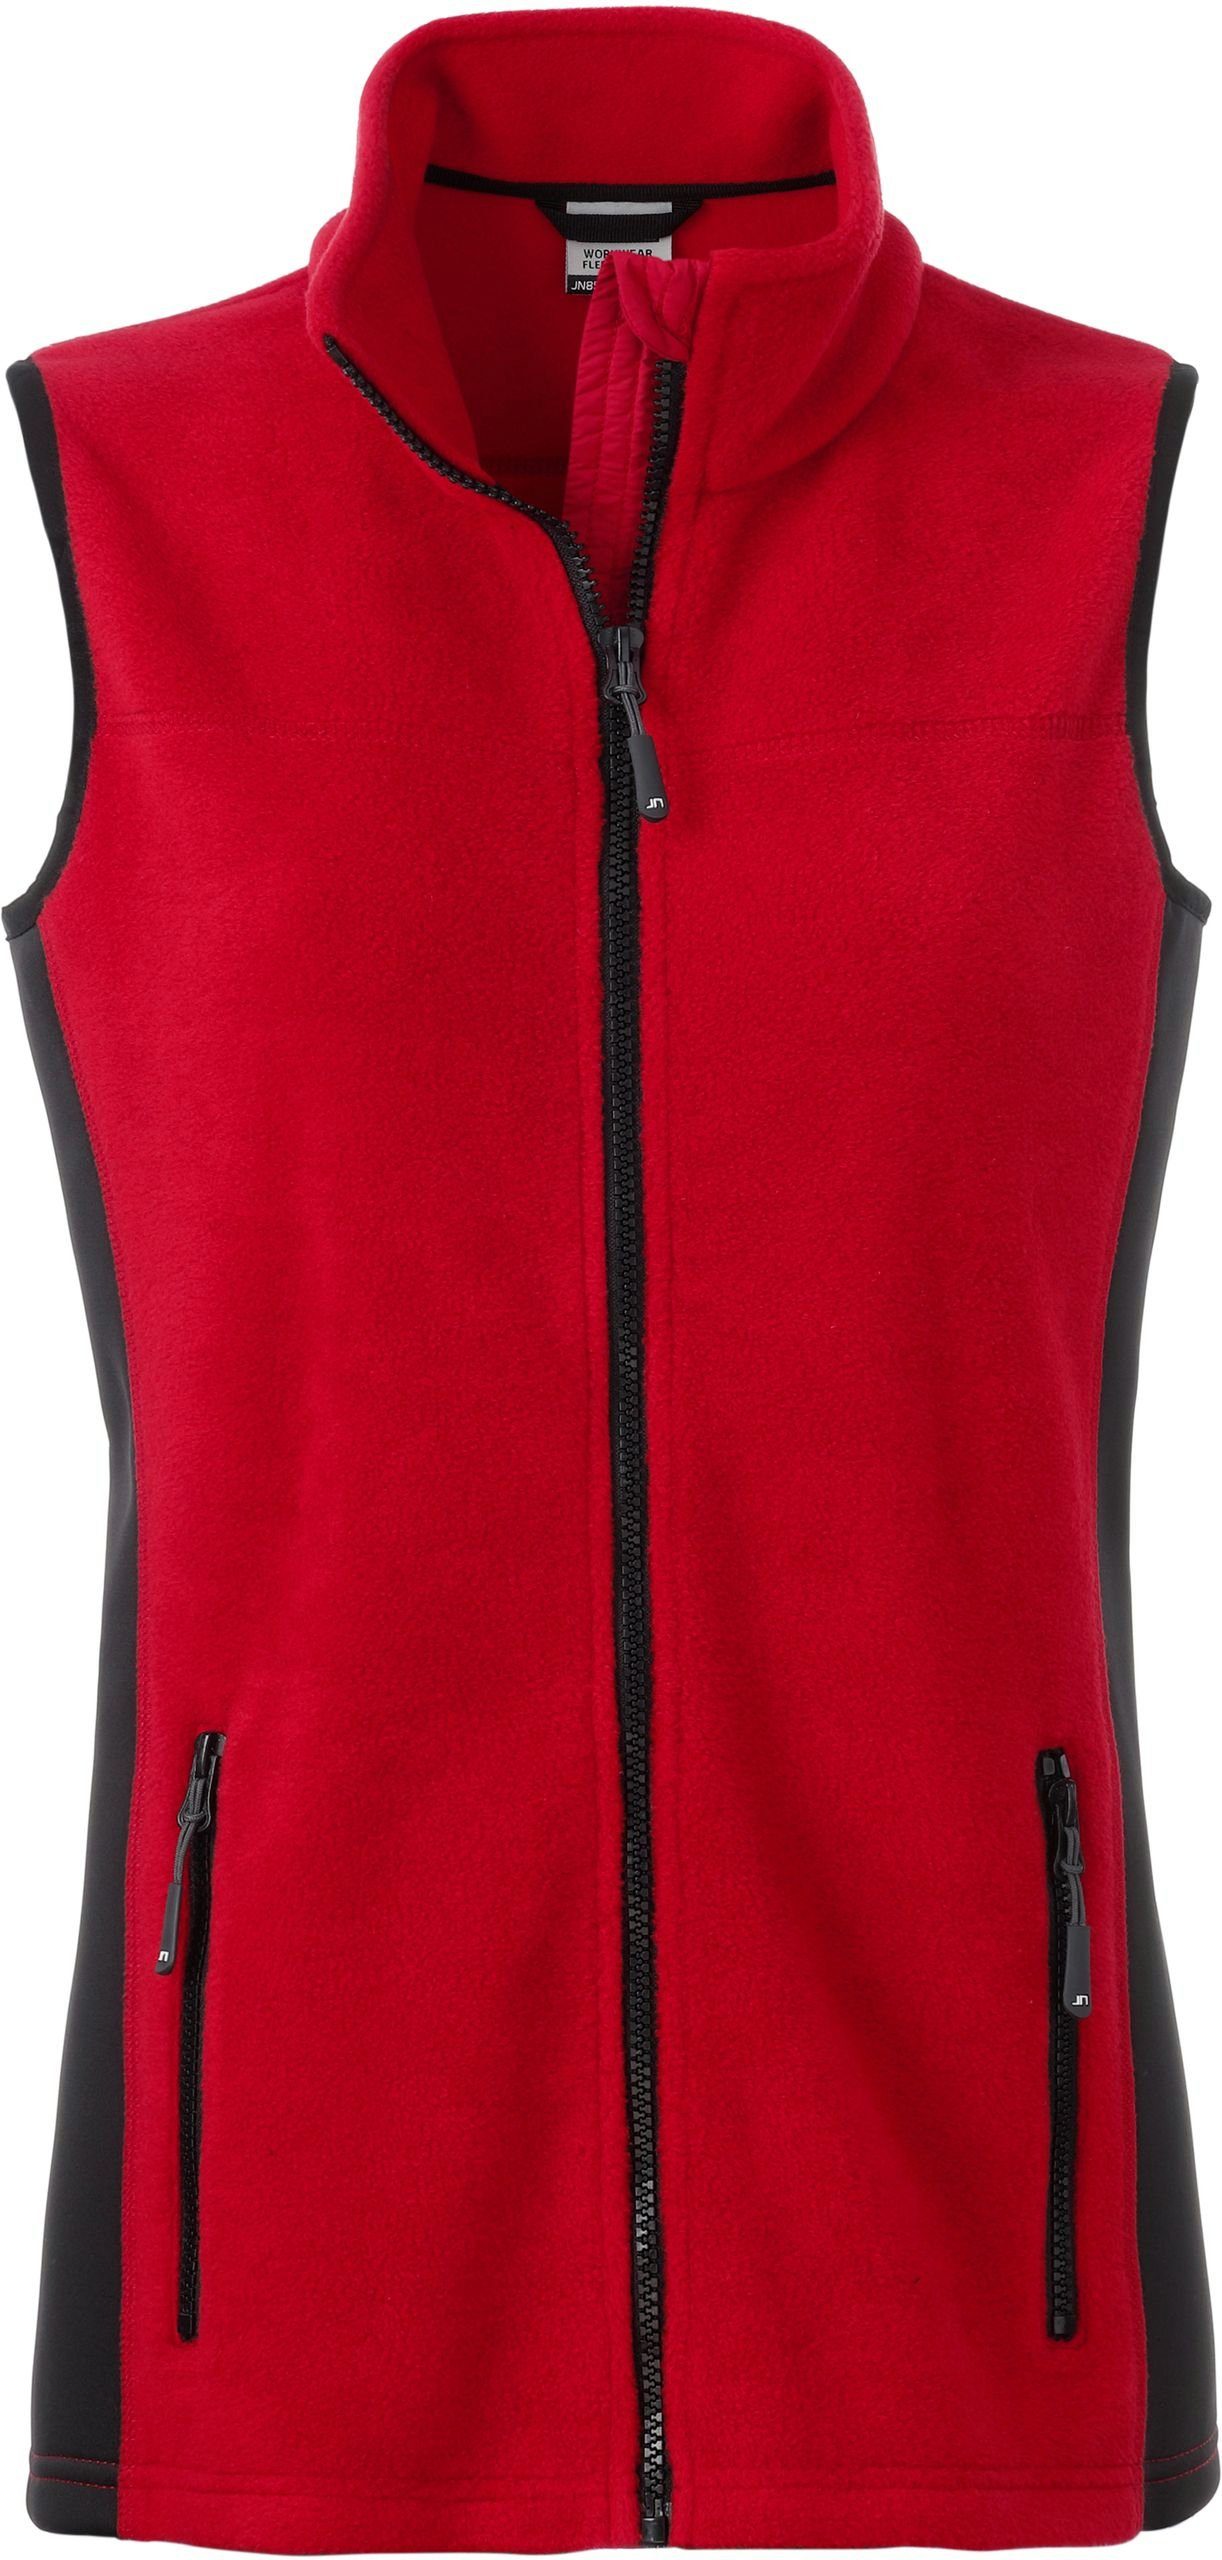 James & Nicholson Weste RED/BLACK Workwear Gilet FaS50855 Fleeceweste Fleece